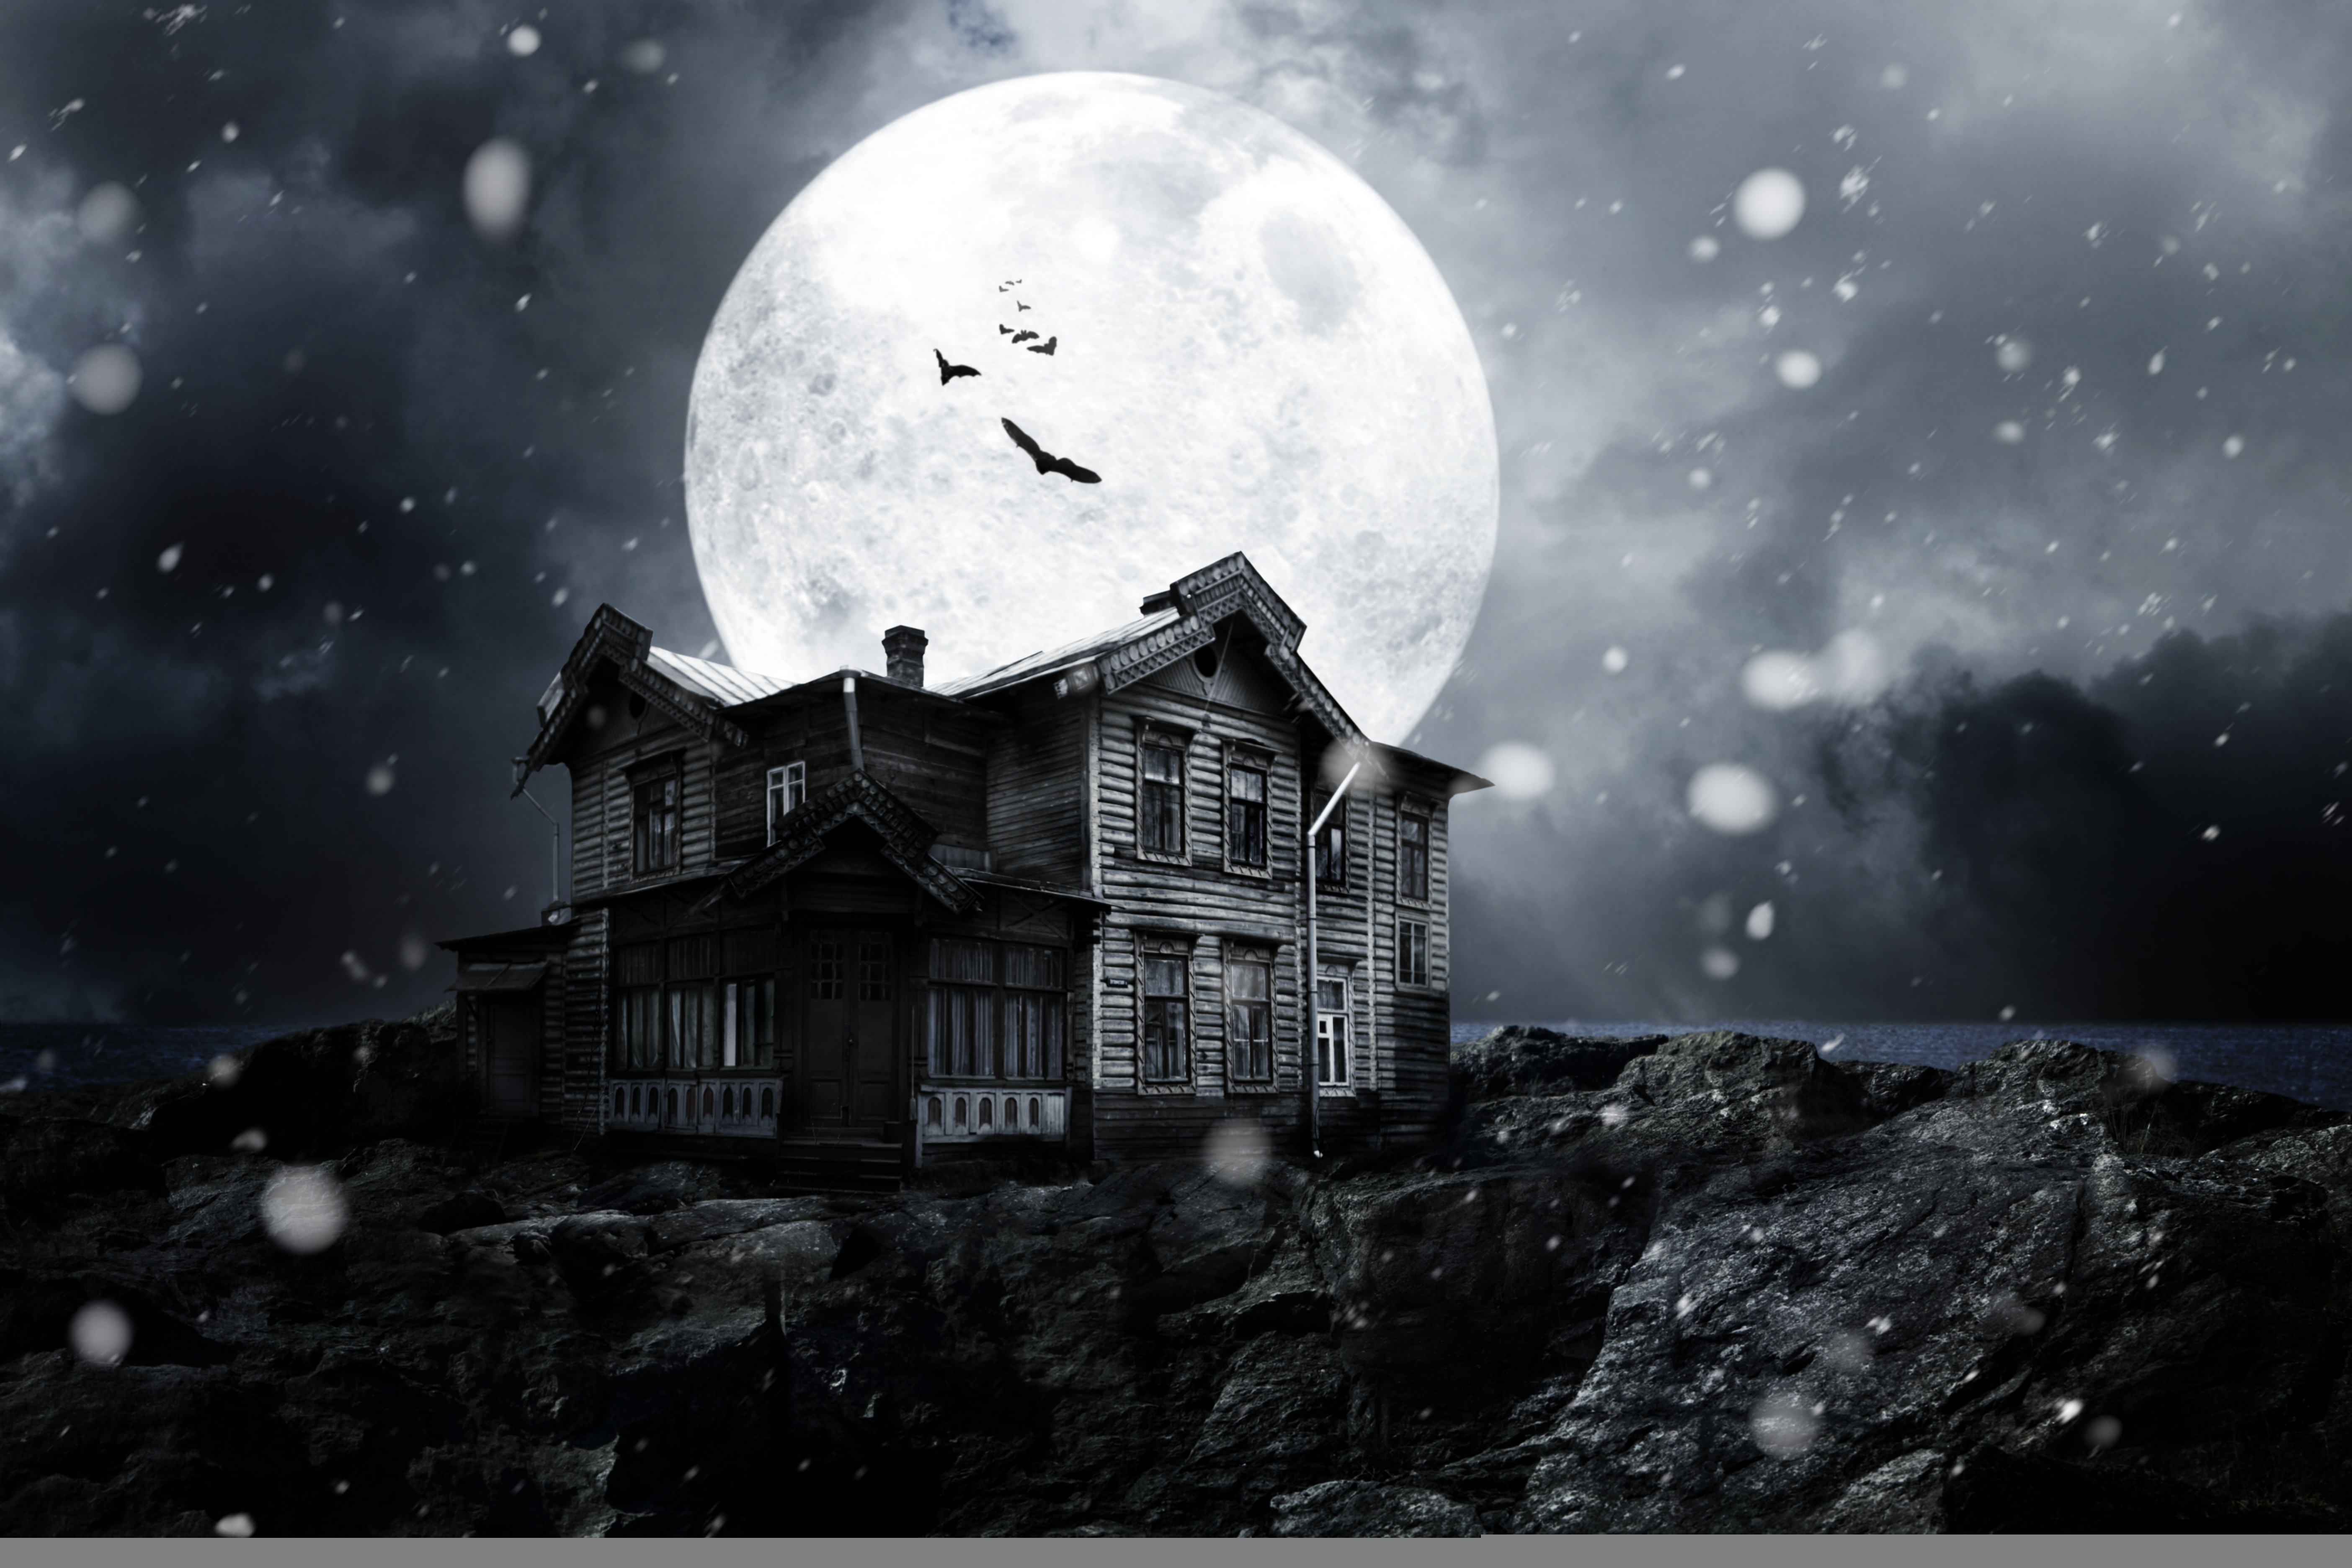 Wallpaper Haunted House Full Moon Moonlight Bats Snow Night